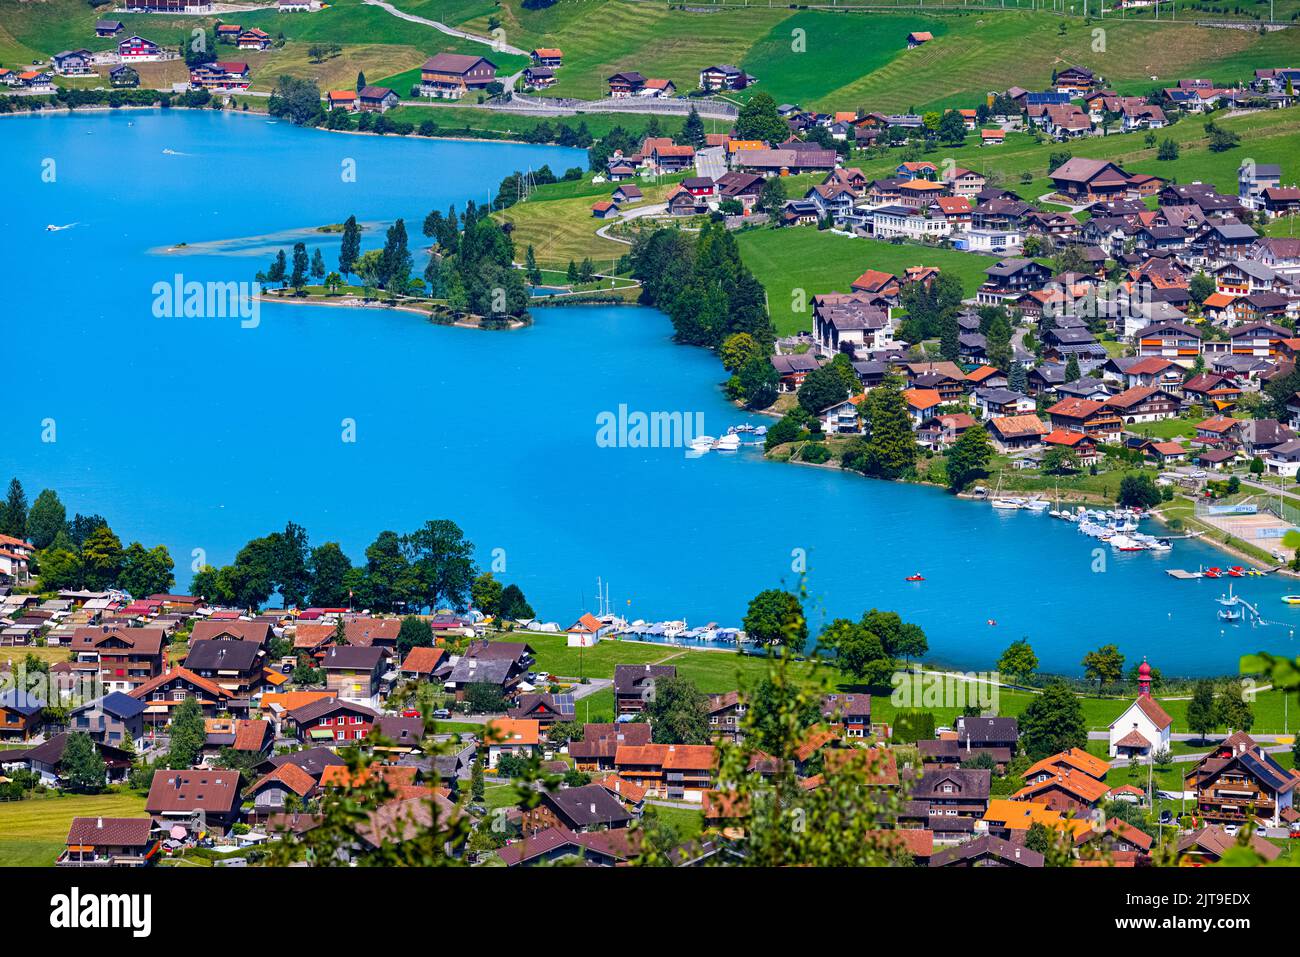 Der berühmte Aussichtspunkt Chalrutirank mit Blick auf Lungern, einer Gemeinde und einem Ort im Schweizer Kanton Obwalden. Lungern liegt am Lungern an See Stockfoto